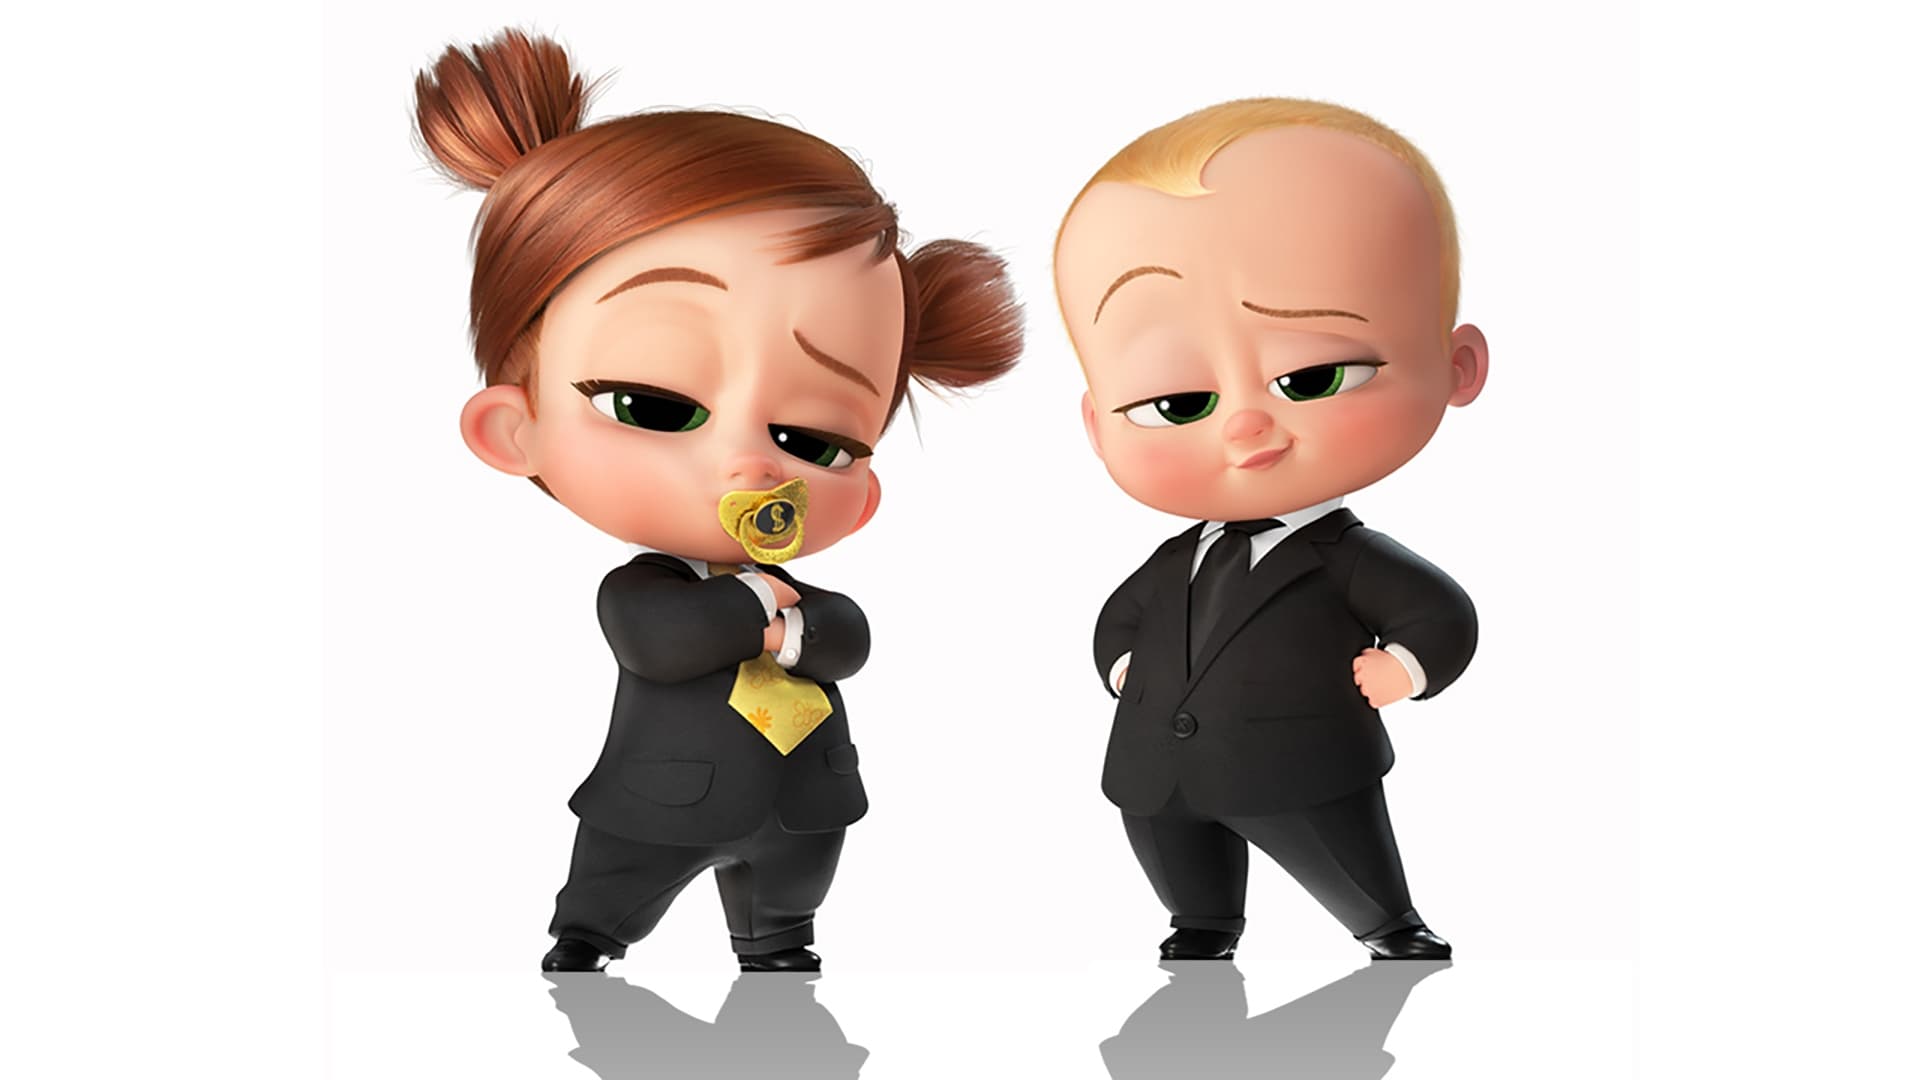 เดอะ บอส เบบี้ 2 The Boss Baby: Family Business ออนไลน์โดยสมบูรณ์ในปี 2021